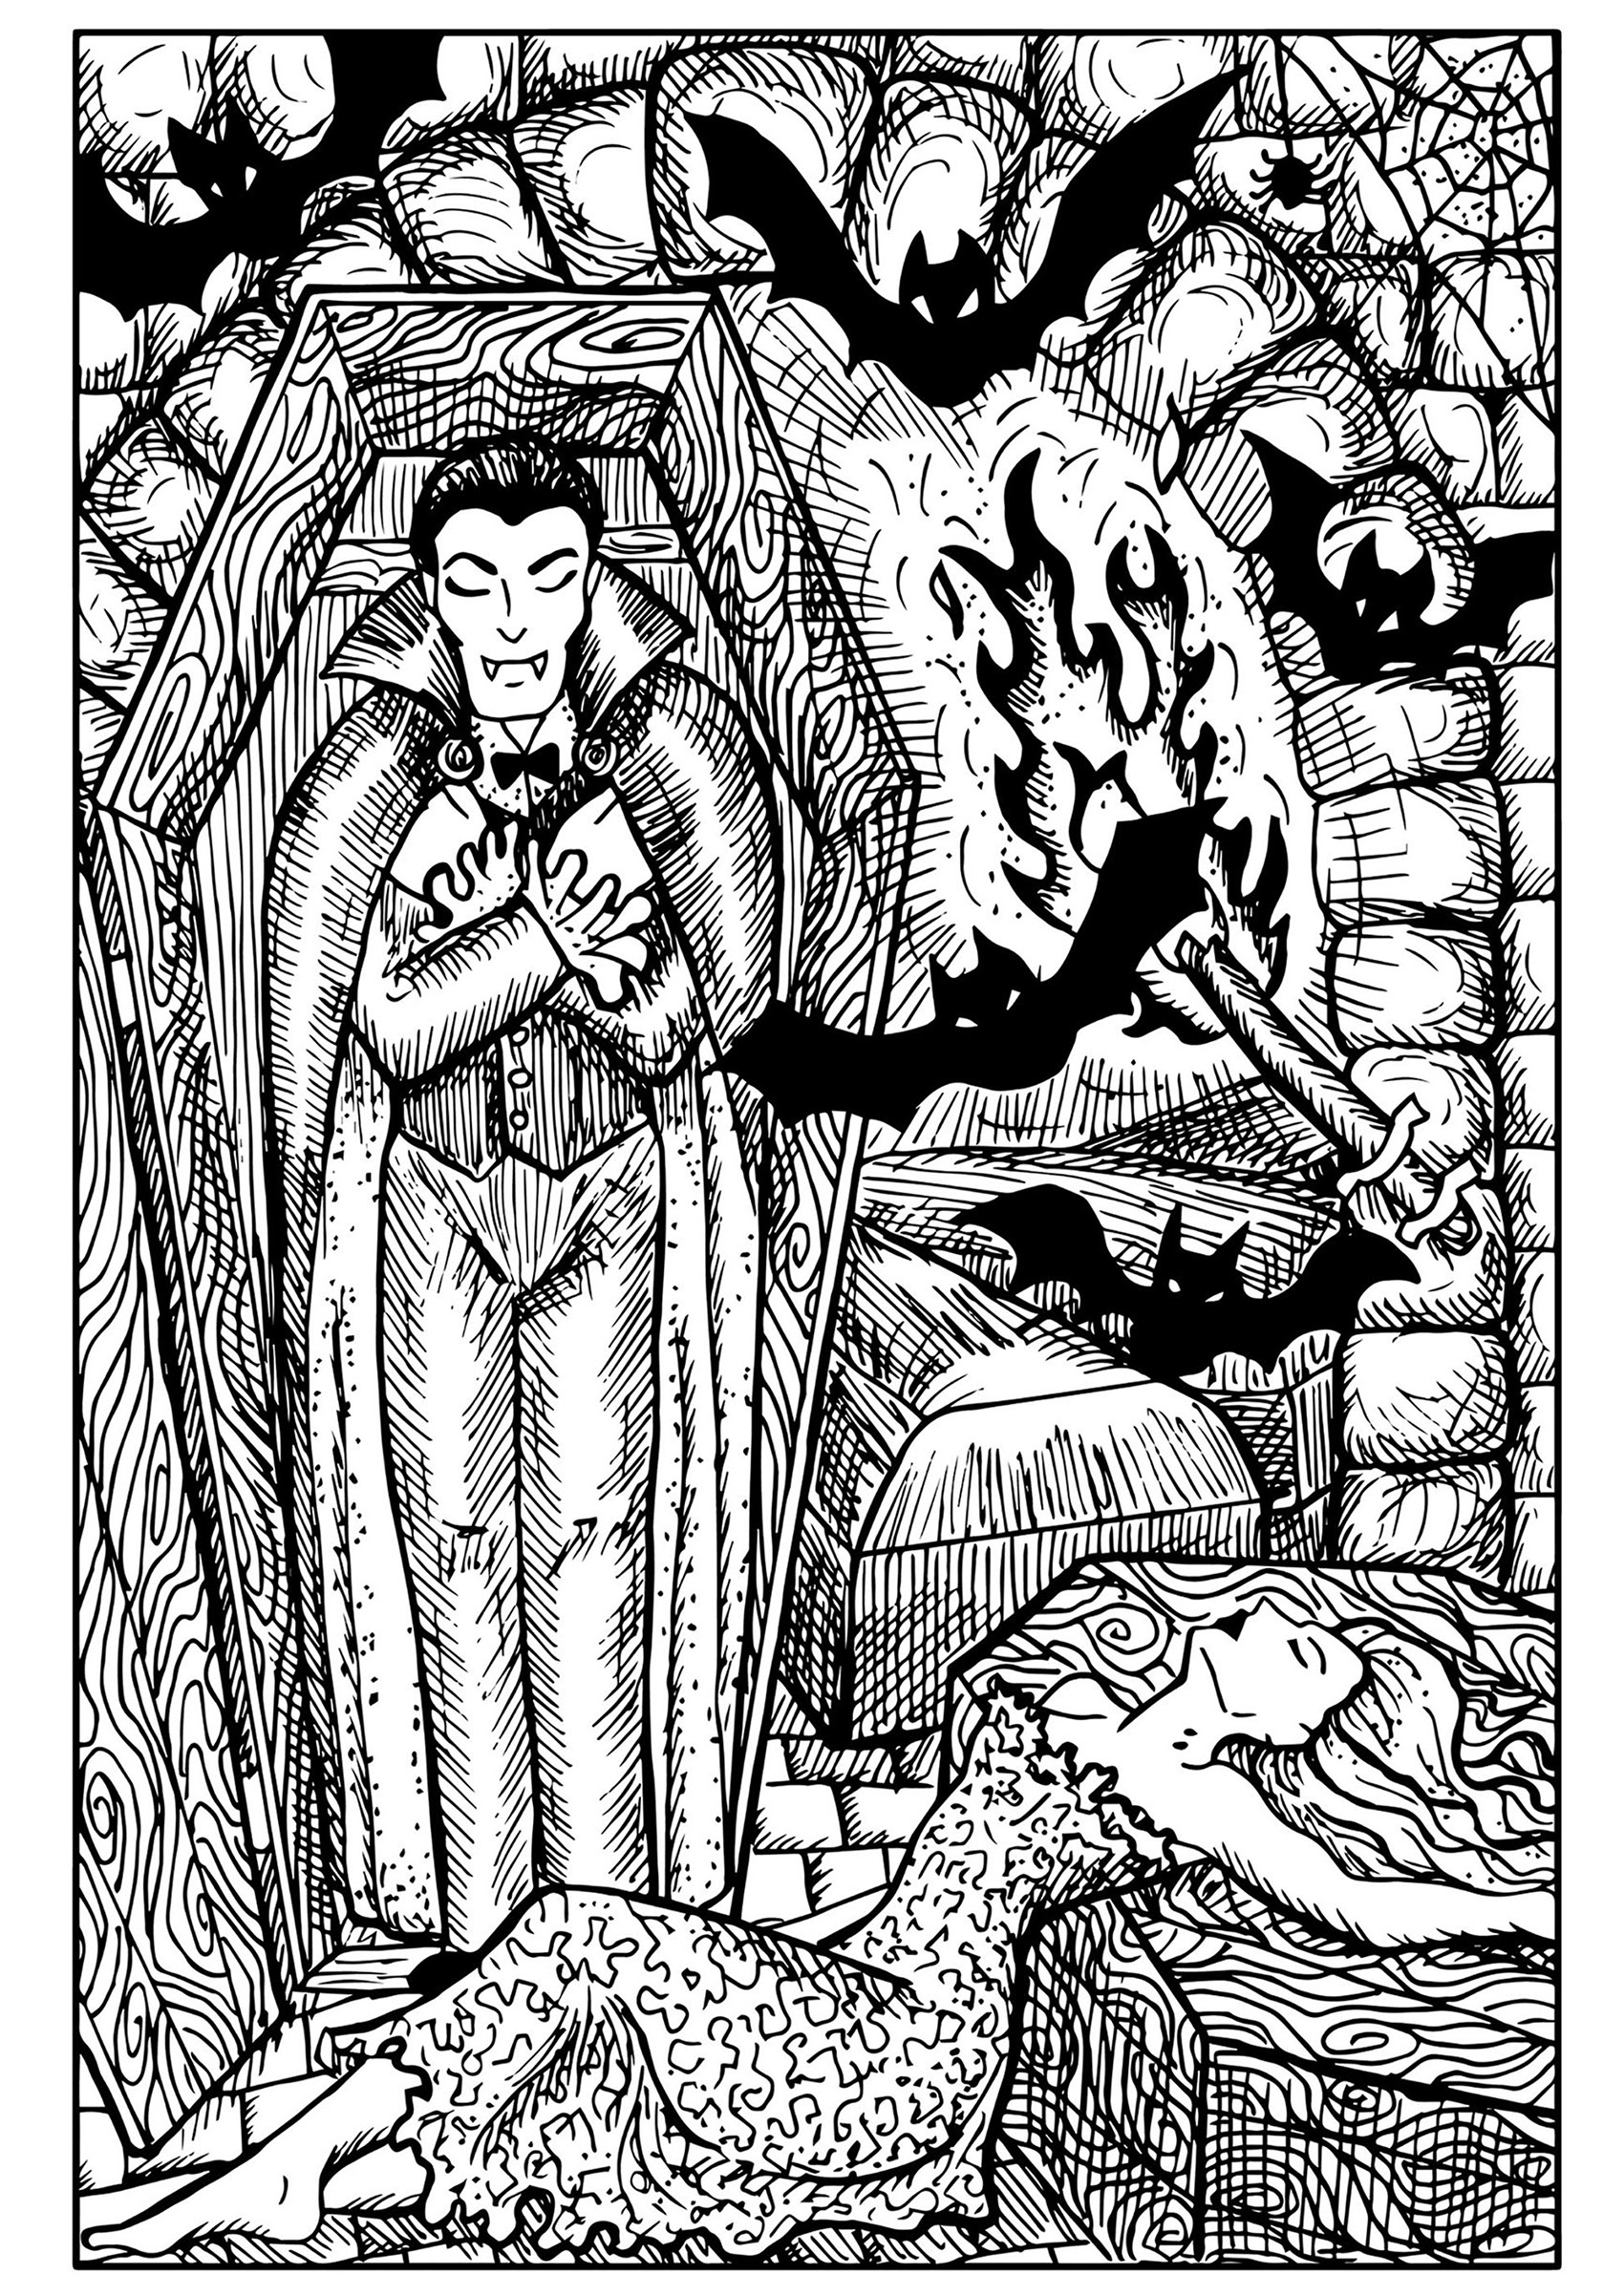 Vampiro no caixão, morcegos e mulher mordida. Muitos pormenores nesta página para colorir de Halloween muito assustadora